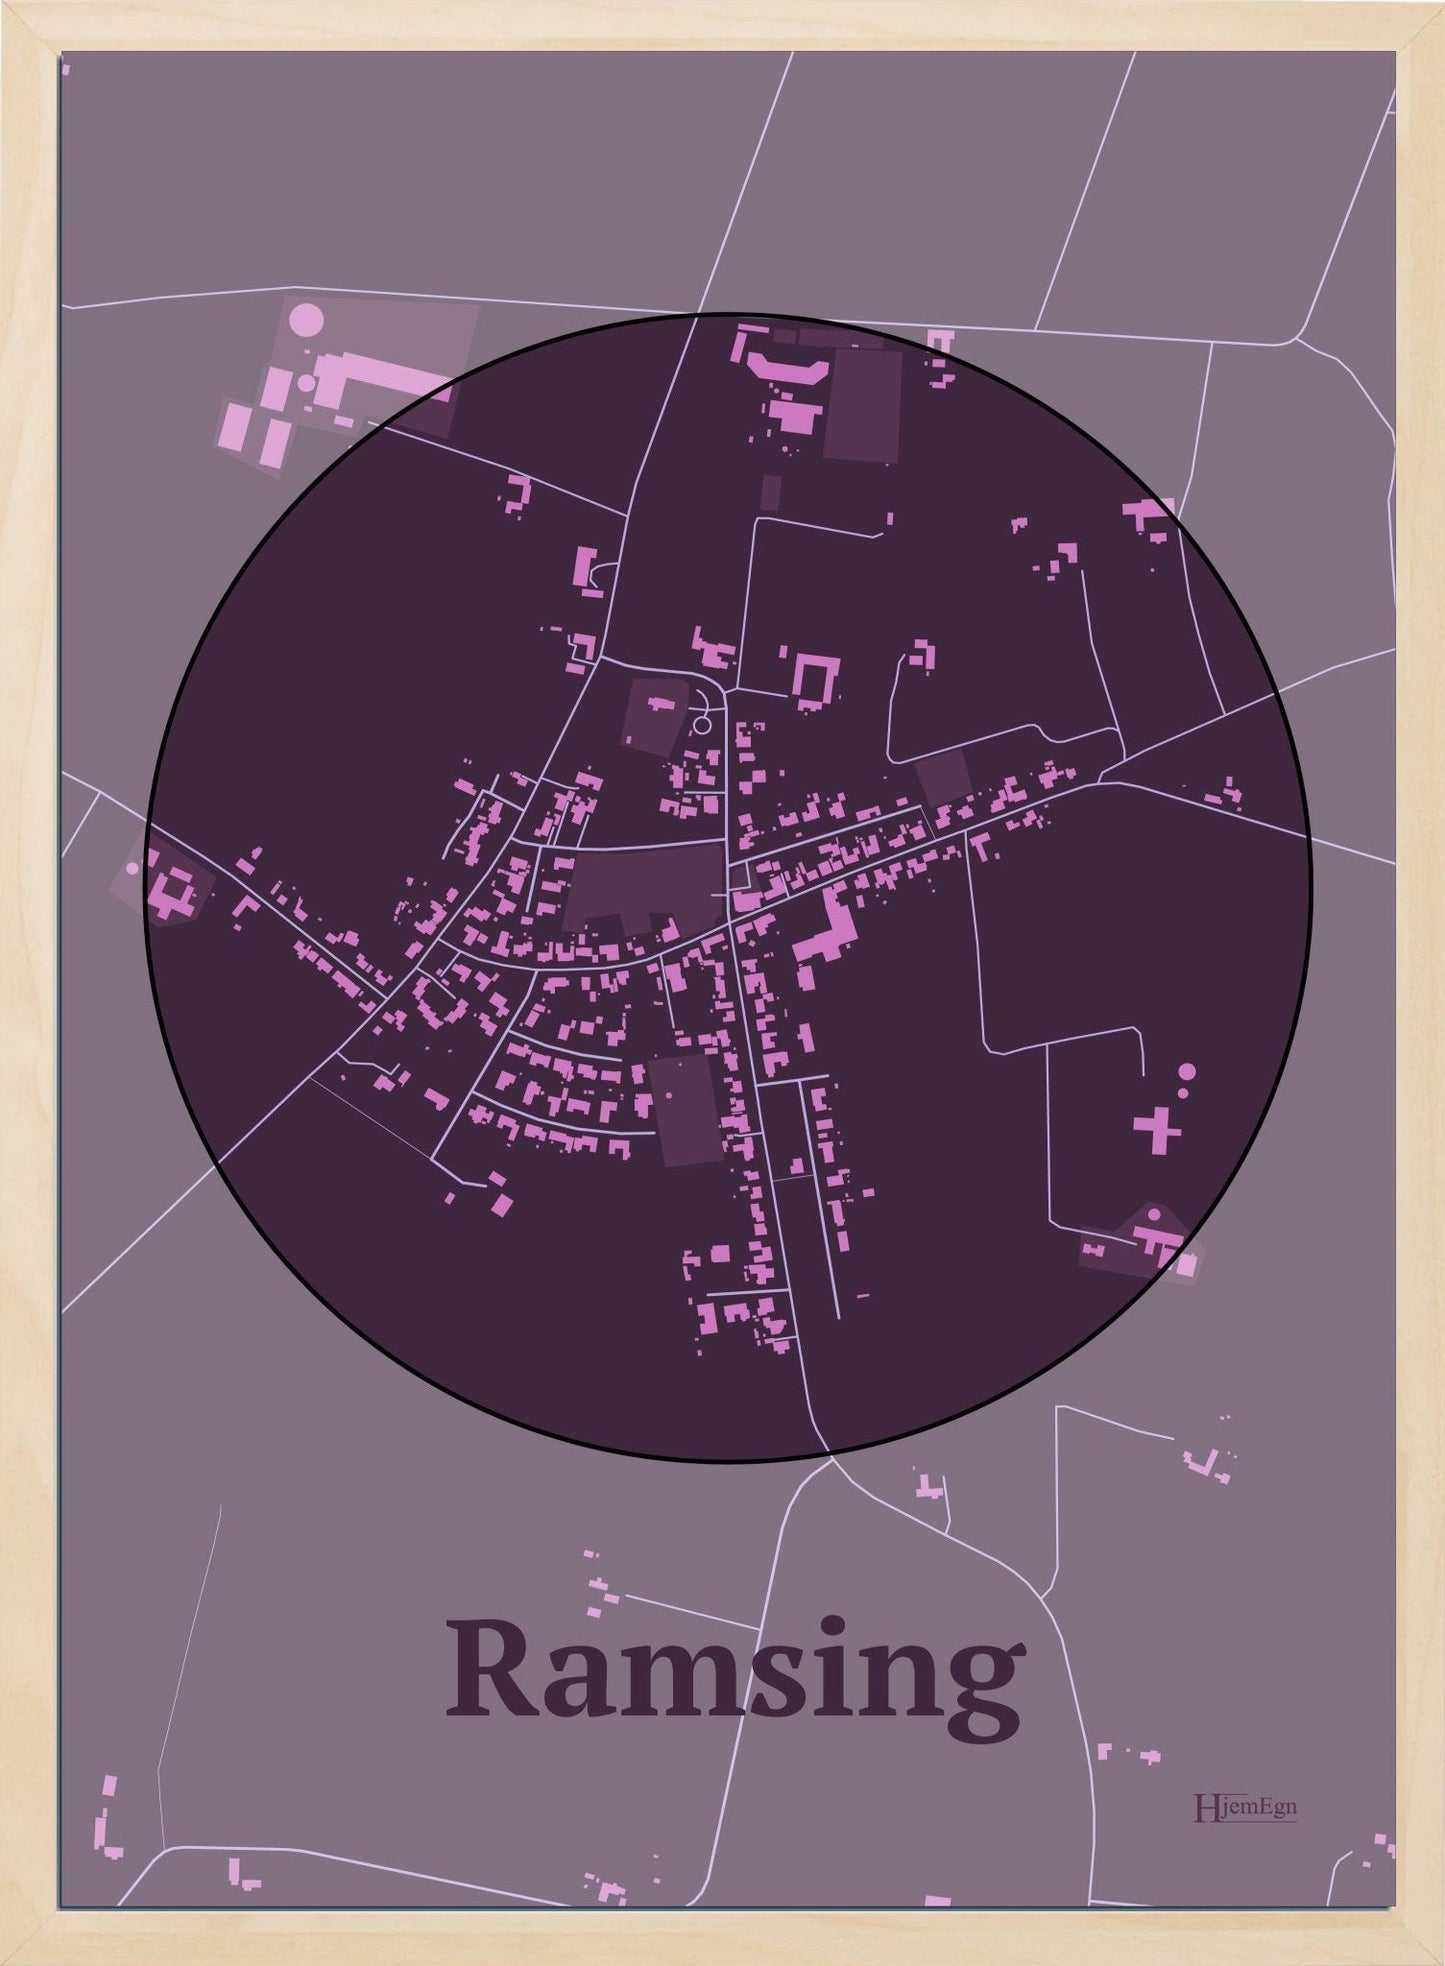 Ramsing plakat i farve mørk rød og HjemEgn.dk design centrum. Design bykort for Ramsing